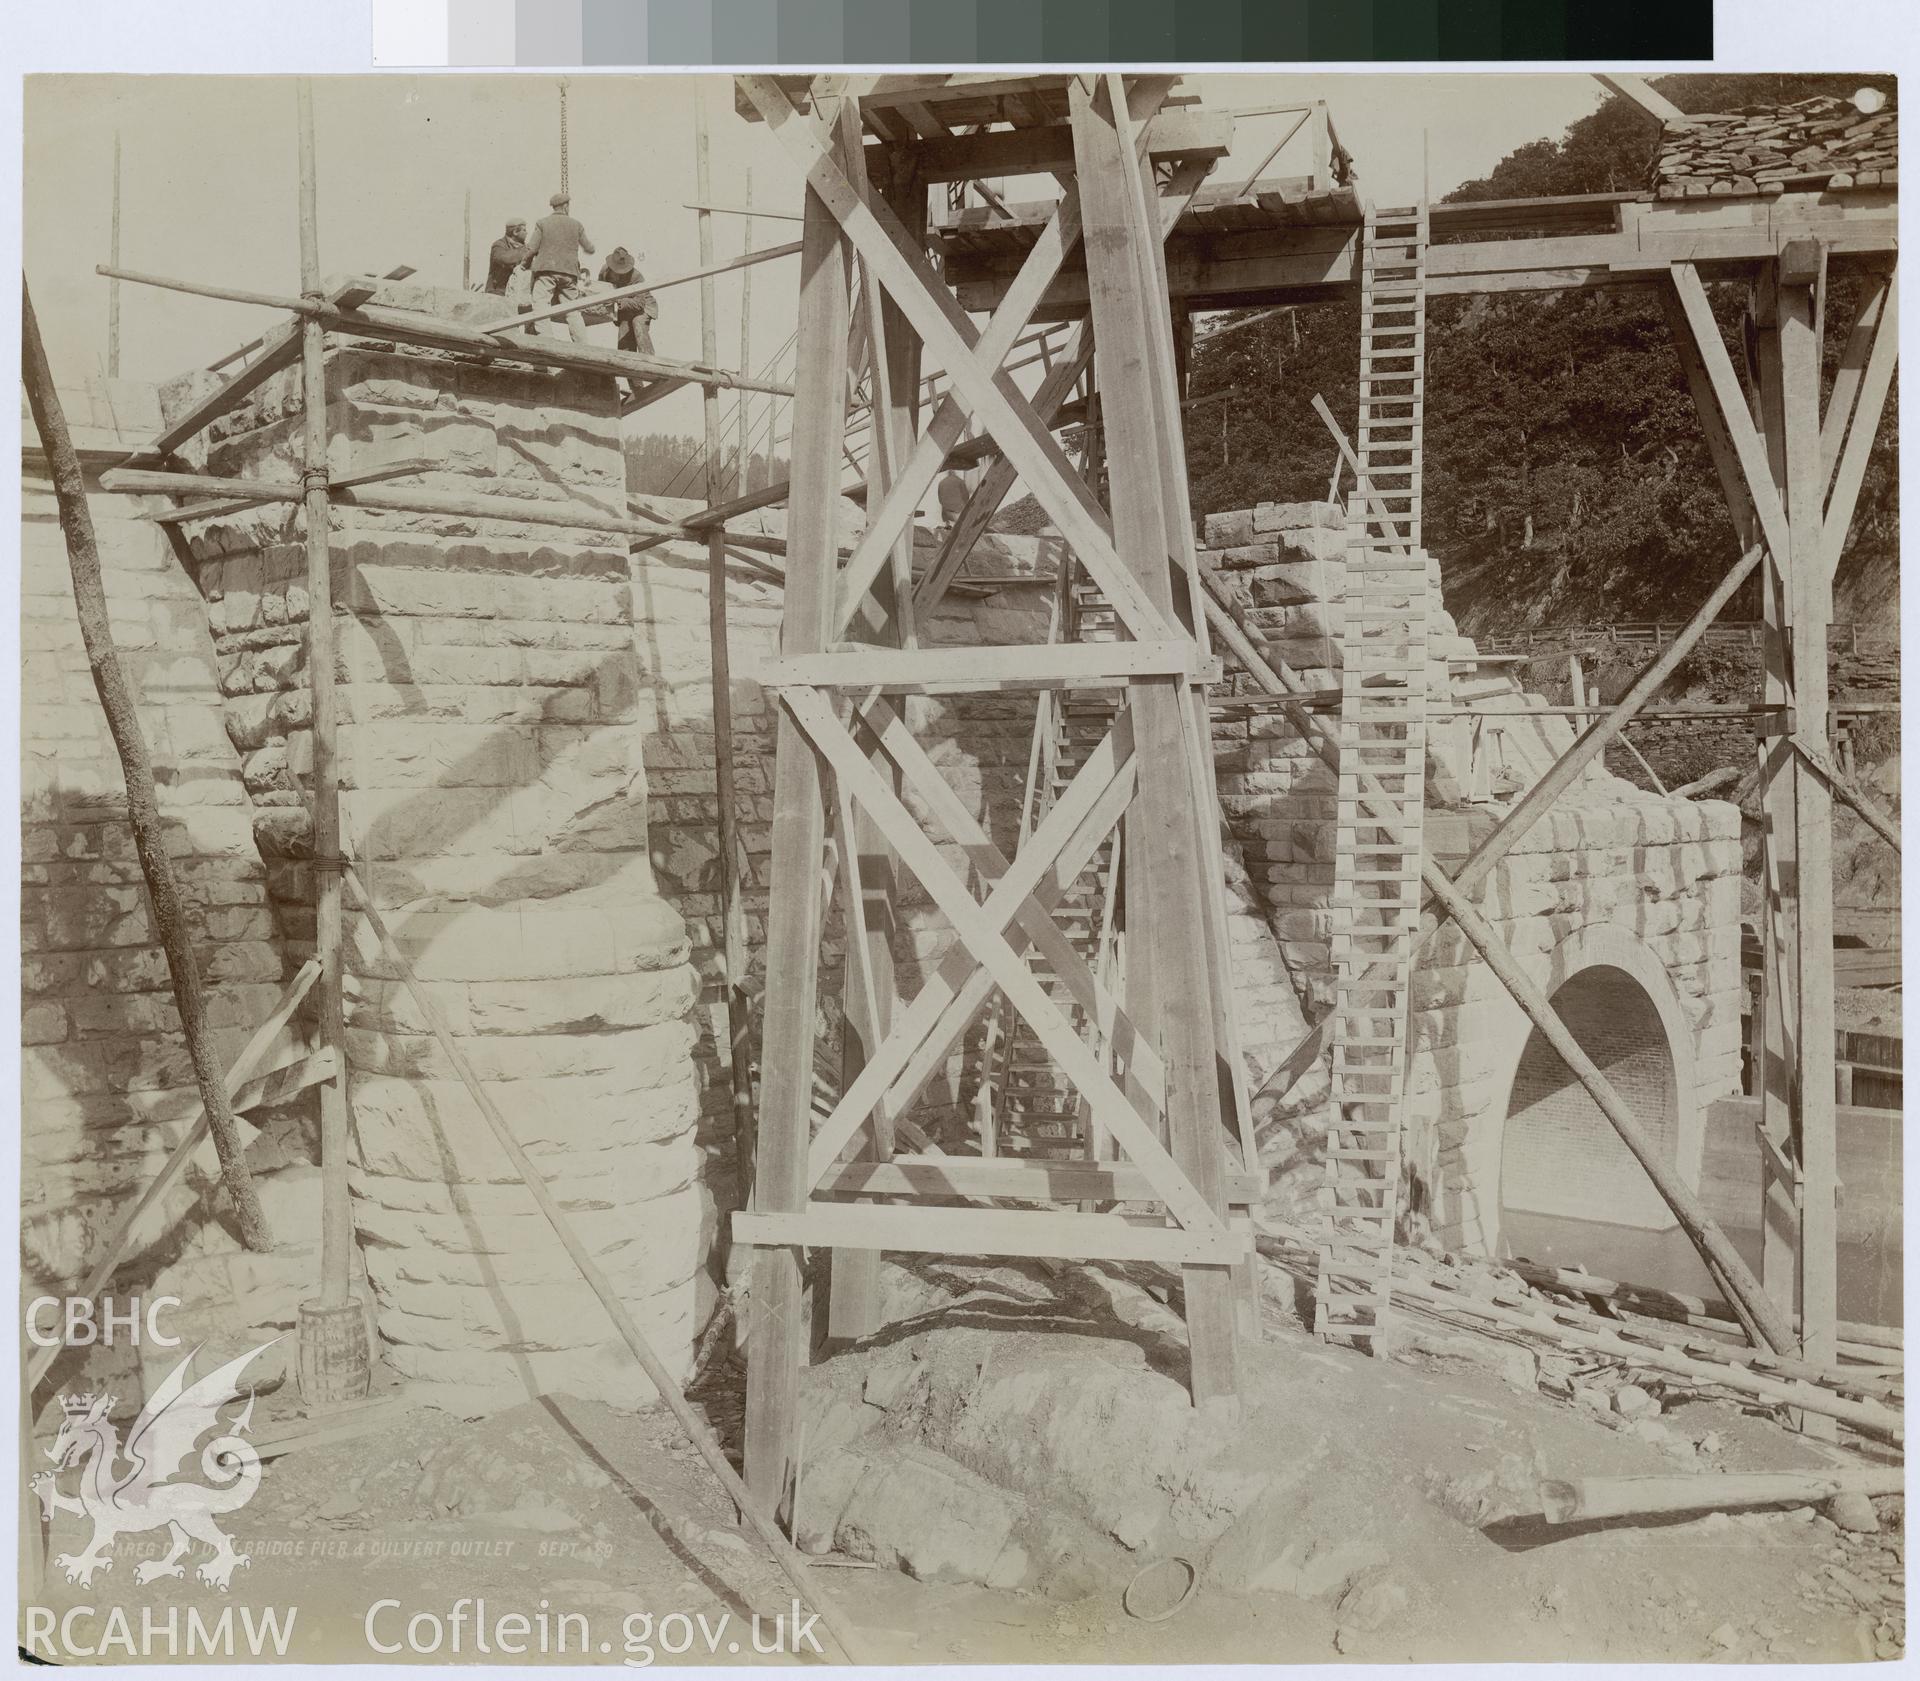 Digital copy of an albumen print from Edward Hubbard Collection showing the Garreg Ddu Dam, Bridge Pier and culvert outlet, taken September 1898.